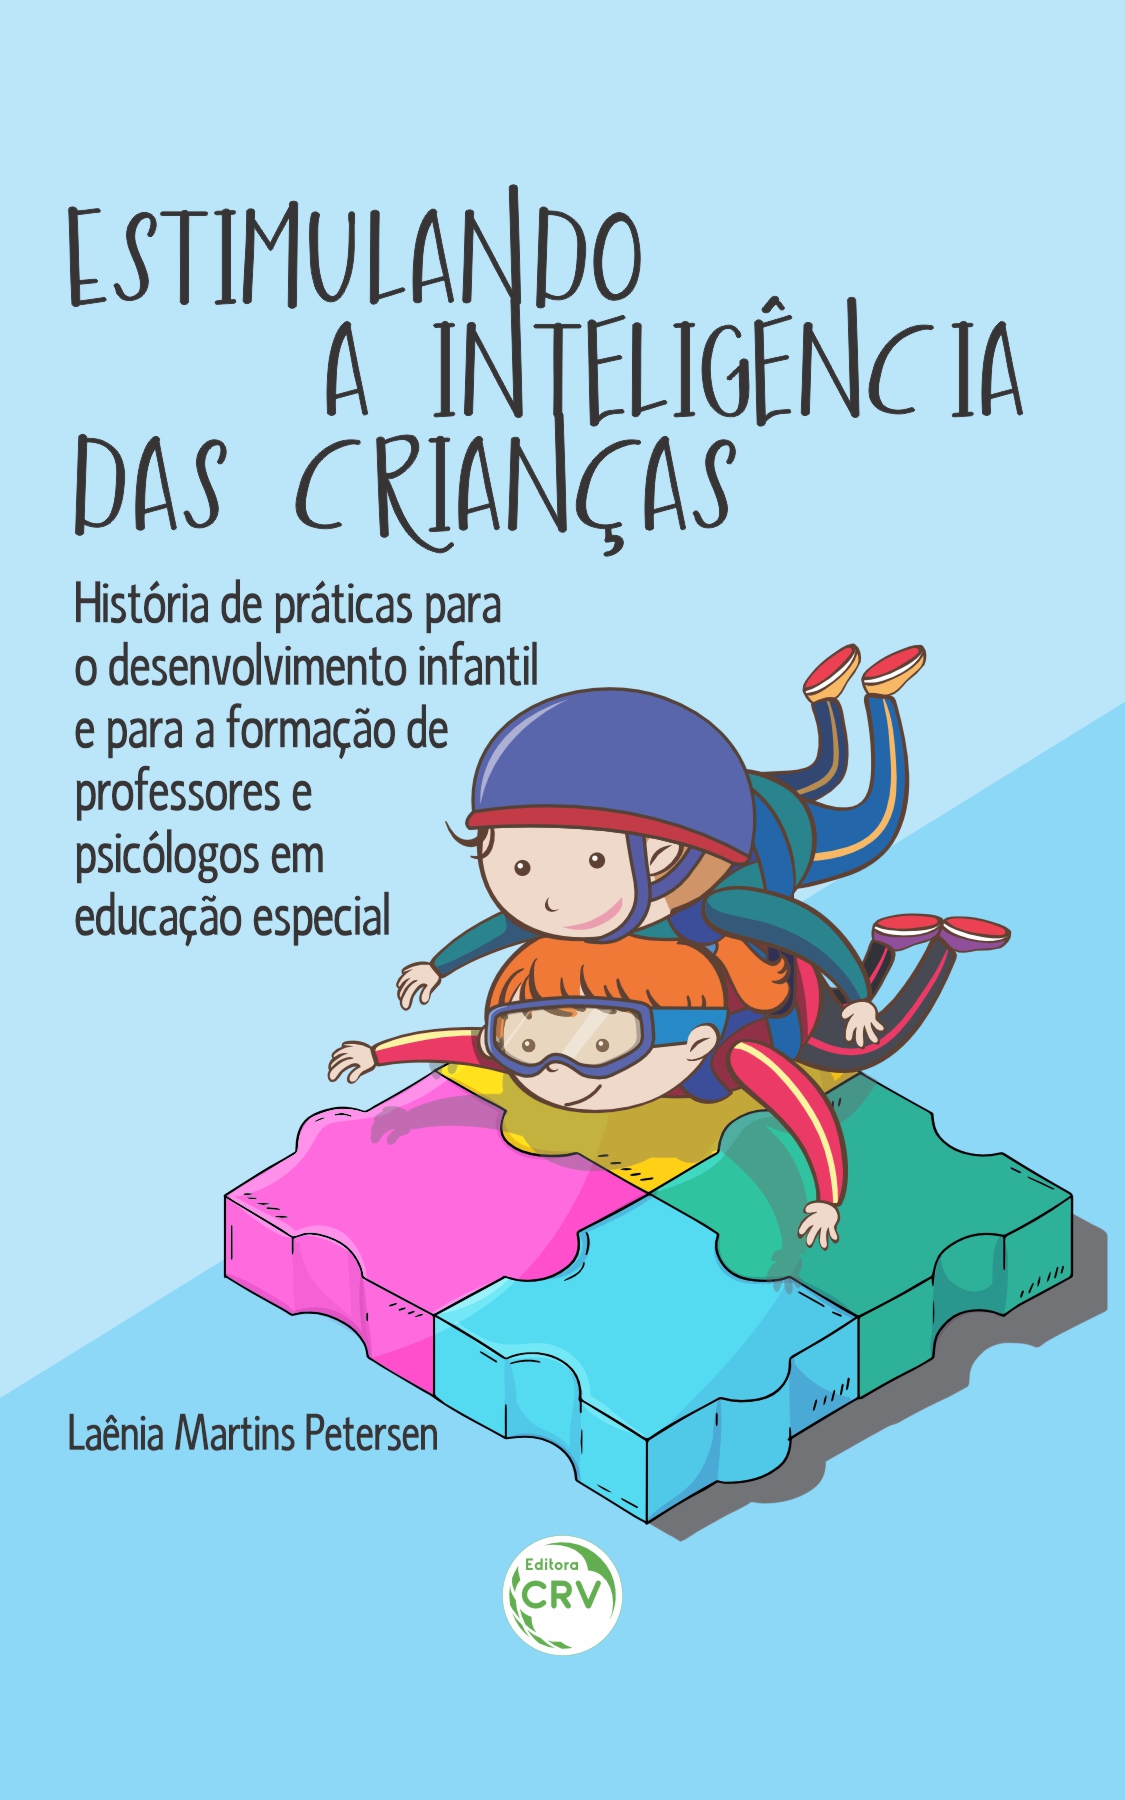 Capa do livro: ESTIMULANDO A INTELIGÊNCIA DAS CRIANÇAS <br> História de práticas para o desenvolvimento infantil e para formação de professores em educação especial